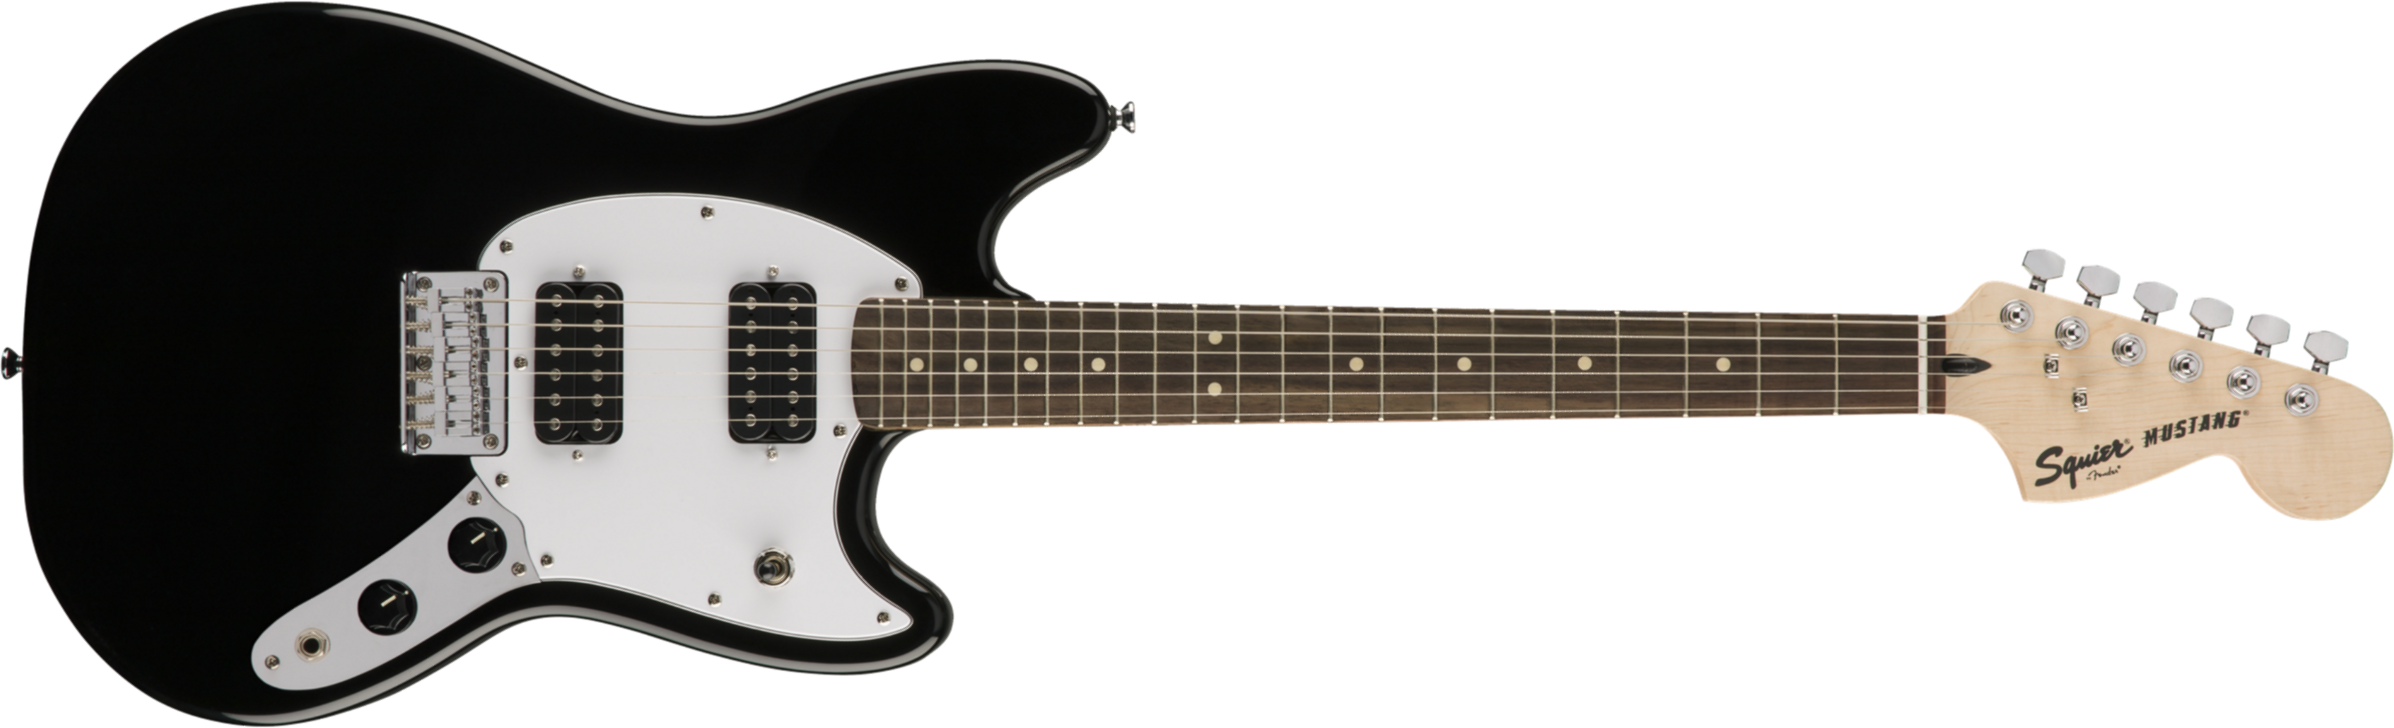 Squier Mustang Bullet Hh 2019 Ht Lau - Black - Retro-rock elektrische gitaar - Main picture